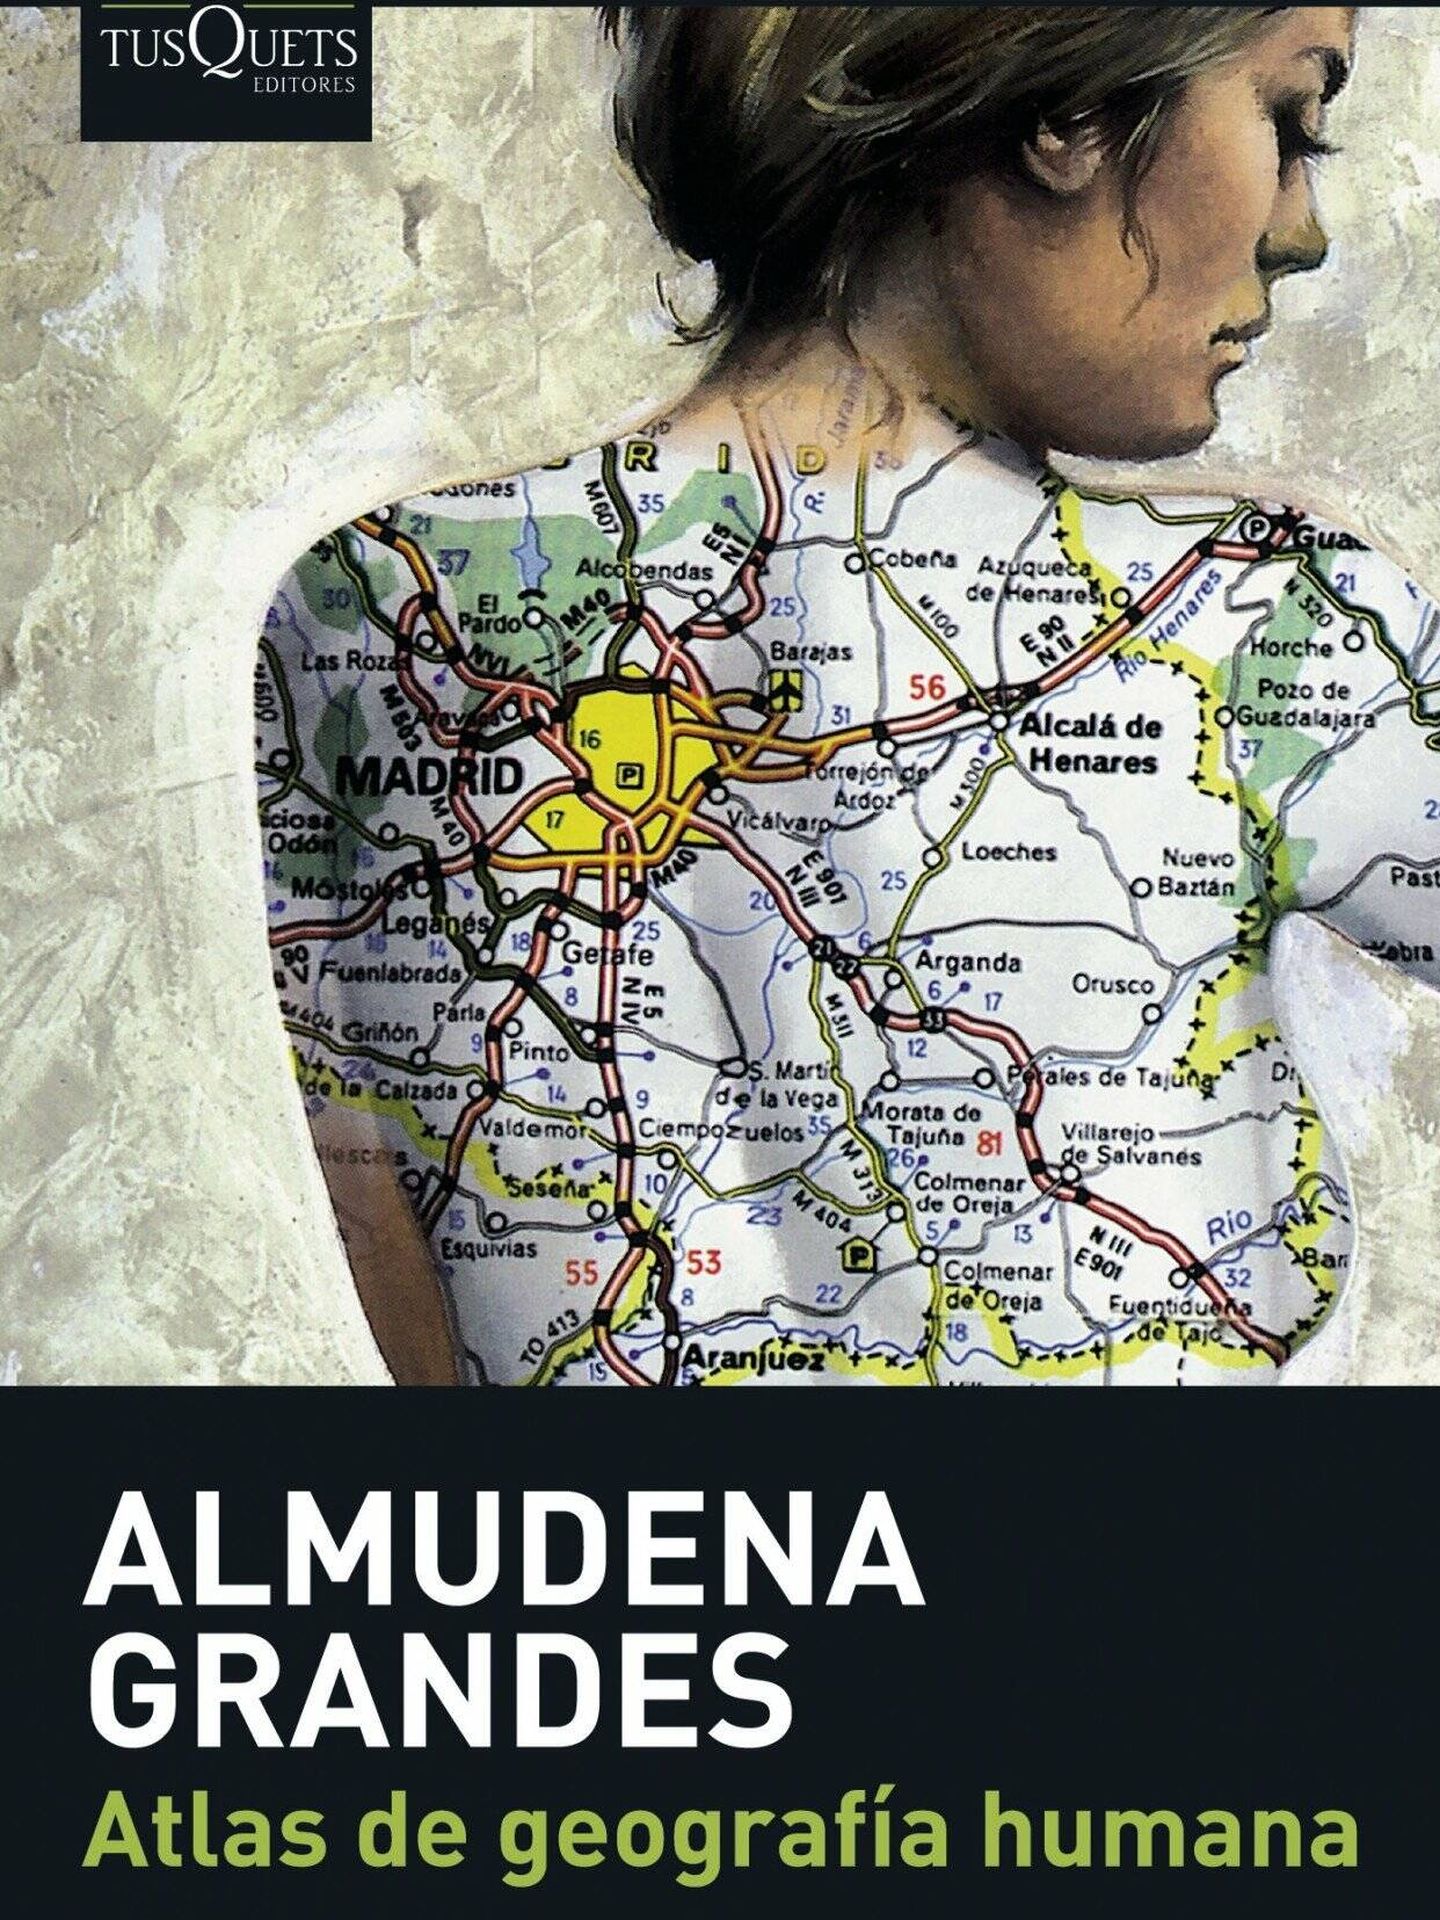 Atlas de geografía humana (Tusquets)